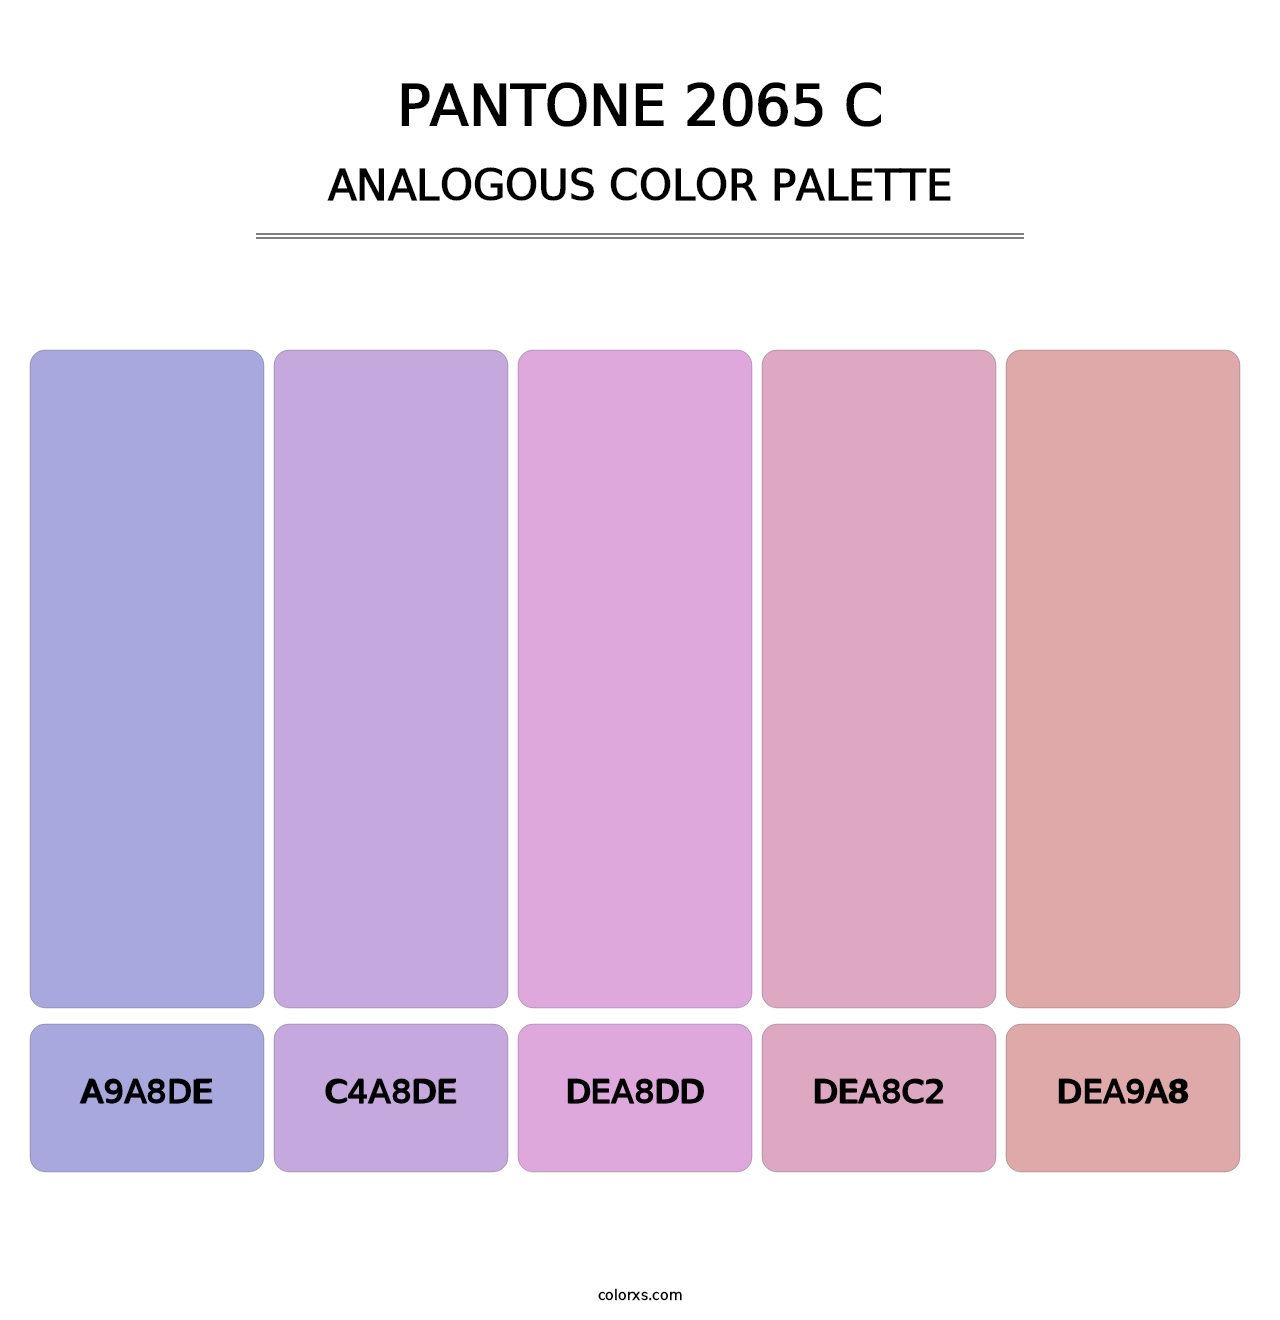 PANTONE 2065 C - Analogous Color Palette